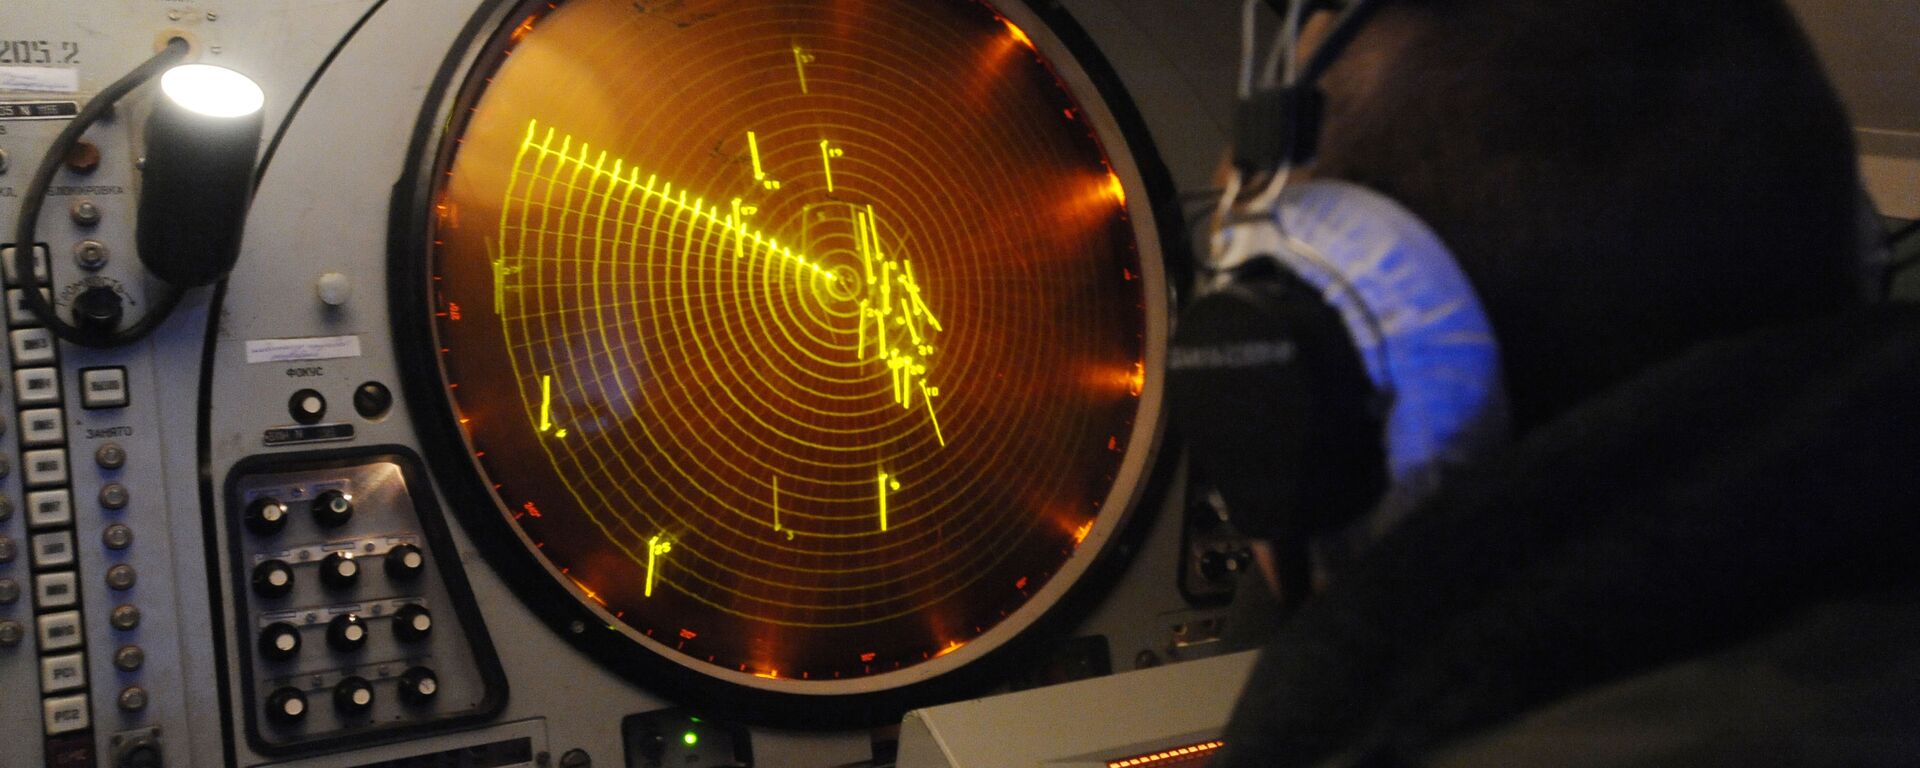 Monitor de radar militar russo (foto de arquivo) - Sputnik Brasil, 1920, 20.05.2022